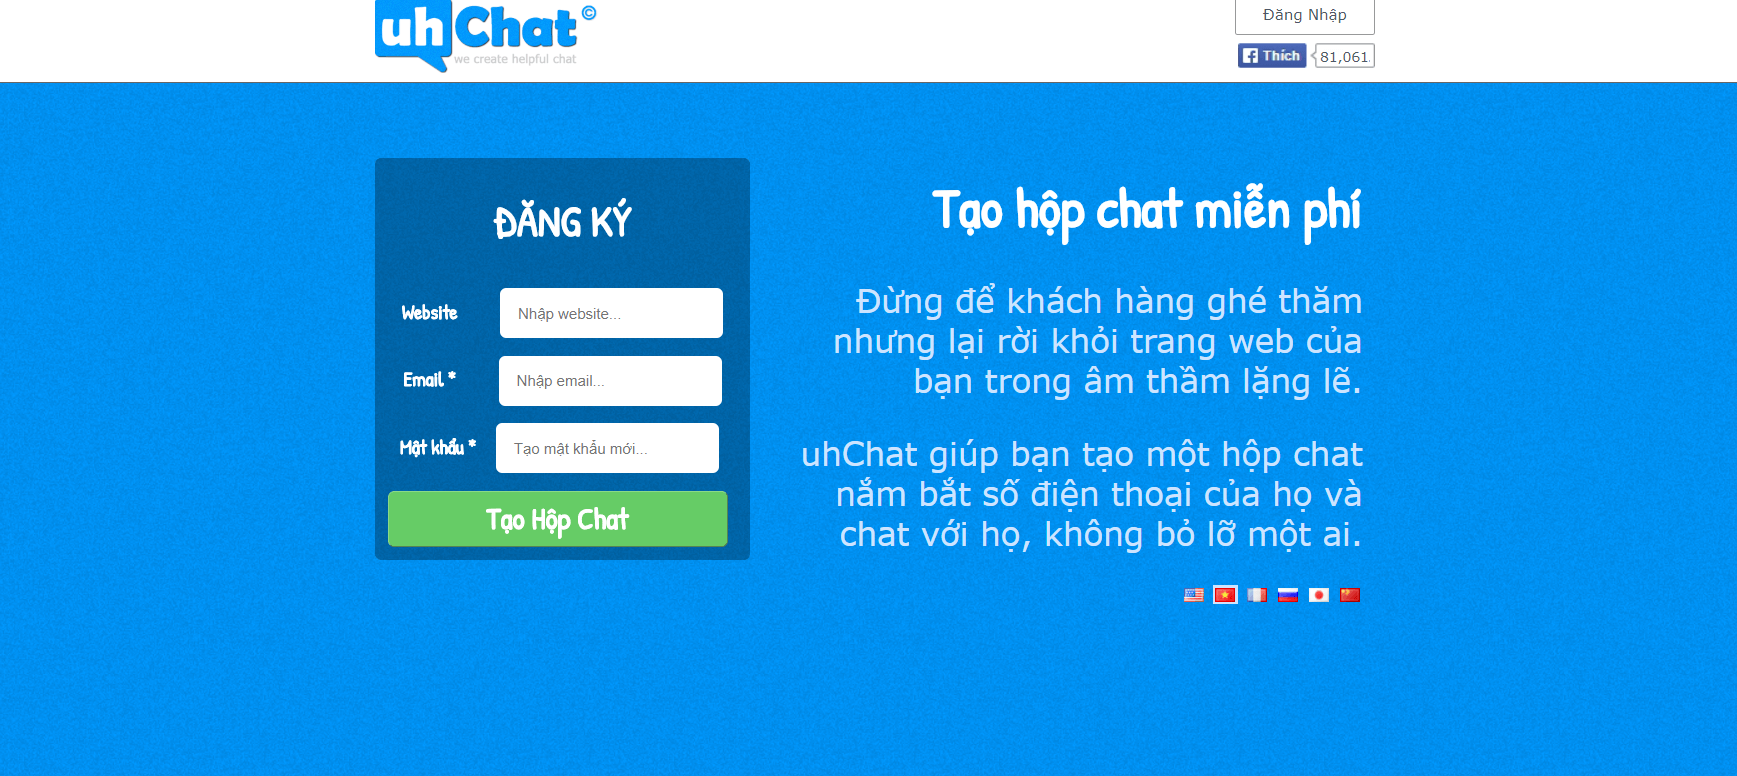 Uhchat là phần mềm chat trực tuyến trên web có tính năng gì?
